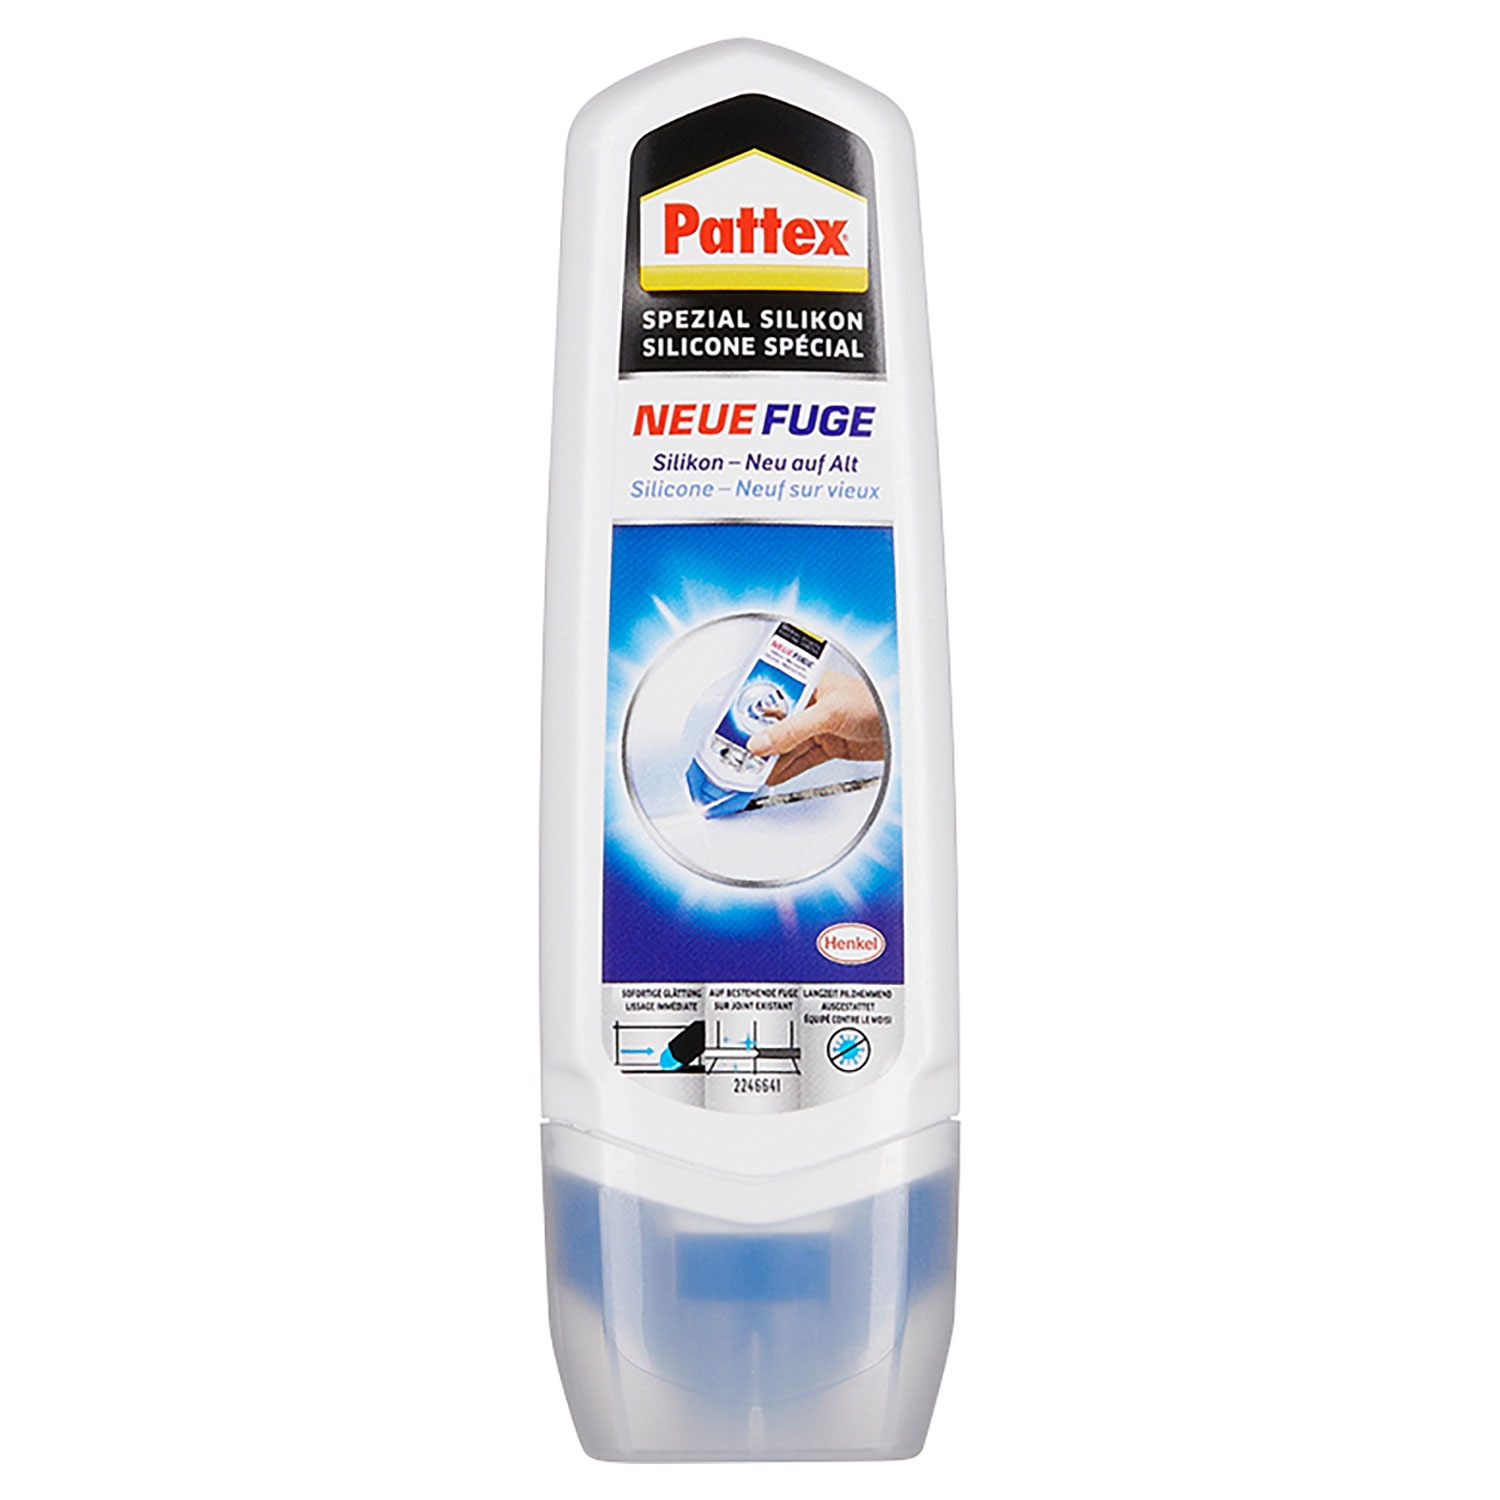 PATTEX Neue Fuge 100 ml